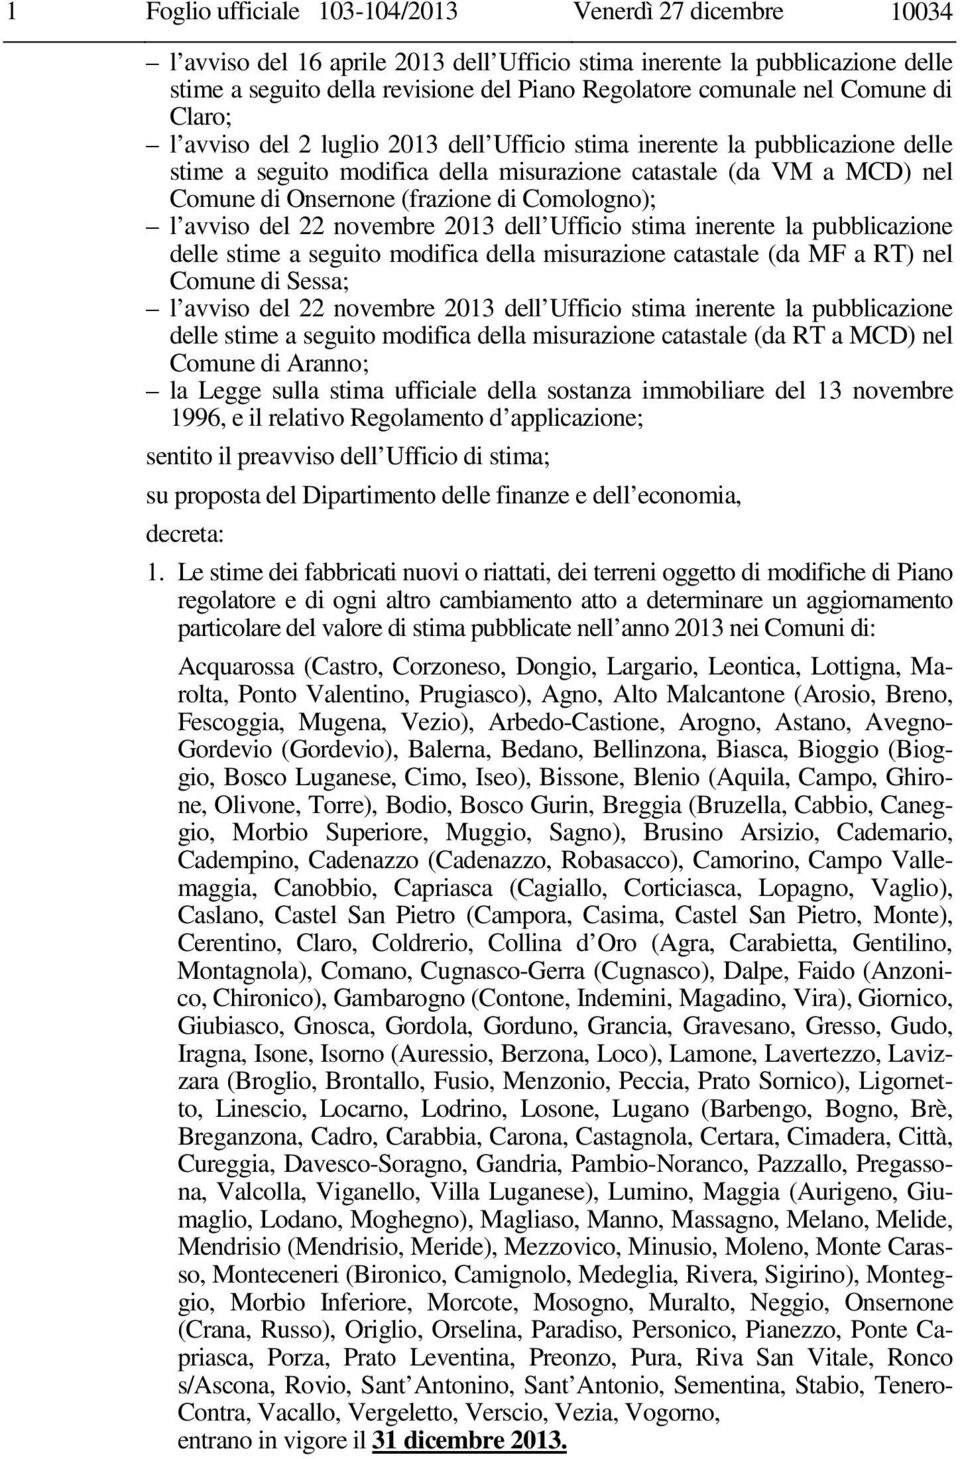 di Comologno); l avviso del 22 novembre 2013 dell Ufficio stima inerente la pubblicazione delle stime a seguito modifica della misurazione catastale (da MF a RT) nel Comune di Sessa; l avviso del 22